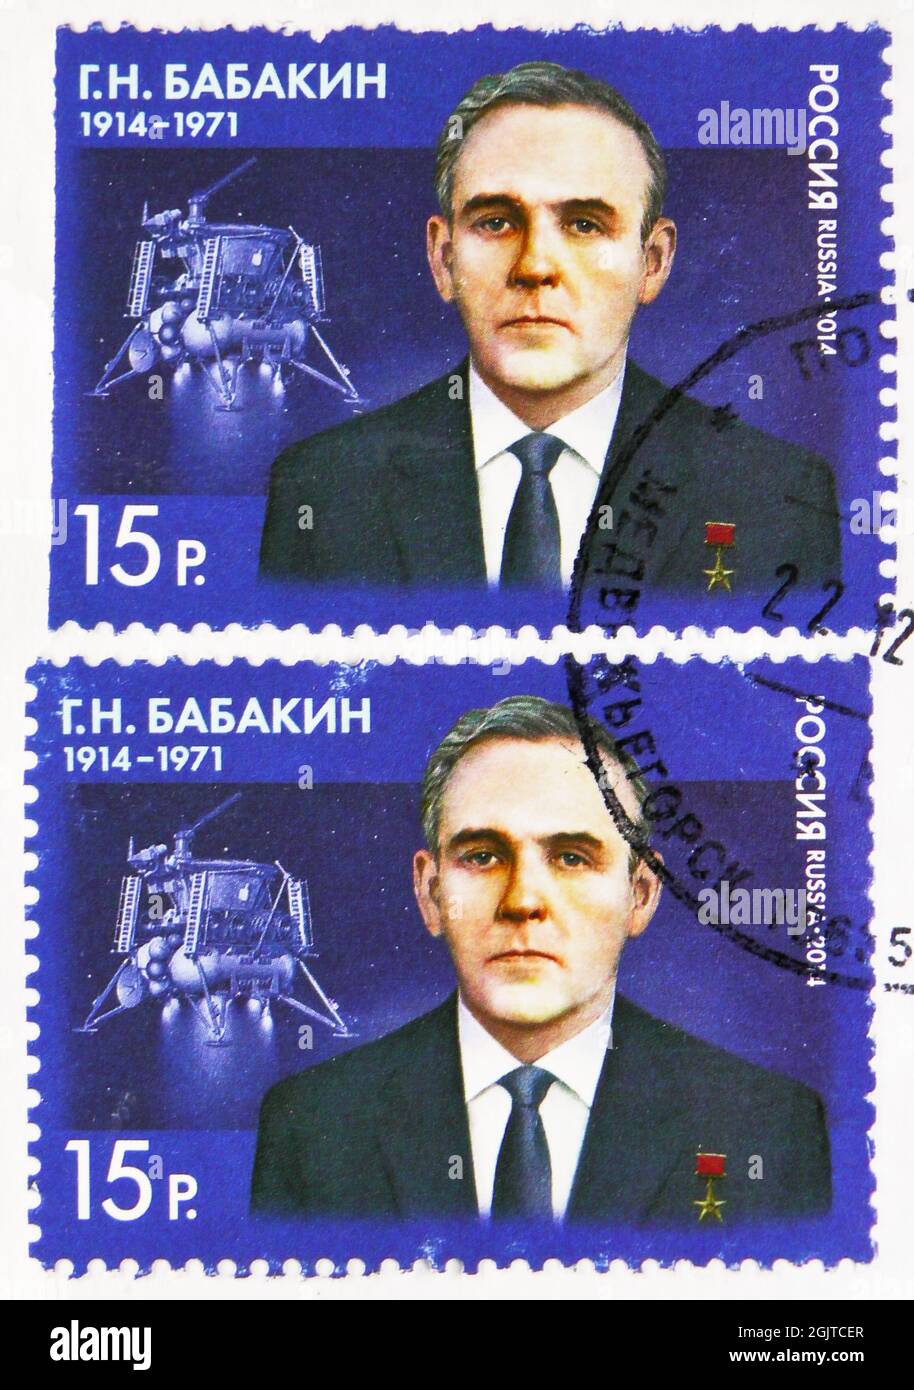 MOSCA, RUSSIA - 09 GIUGNO 2021: Due francobolli stampati in Russia dedicati al centenario della nascita di G.N. Babakin (1914-1971), scienziato, centenar di nascita Foto Stock